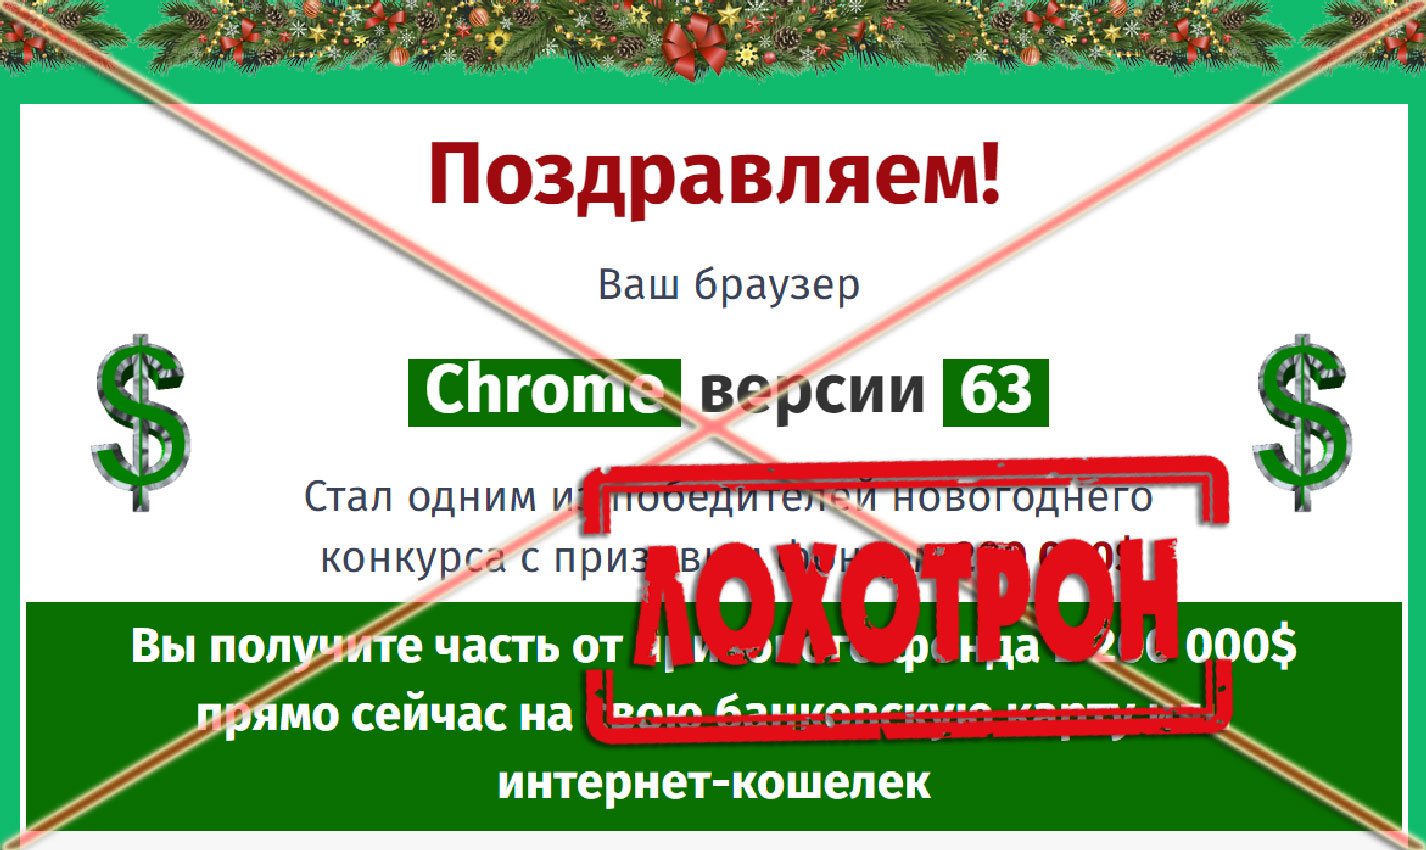 rabotah.ru Международная Акция поощрения пользователей браузеров